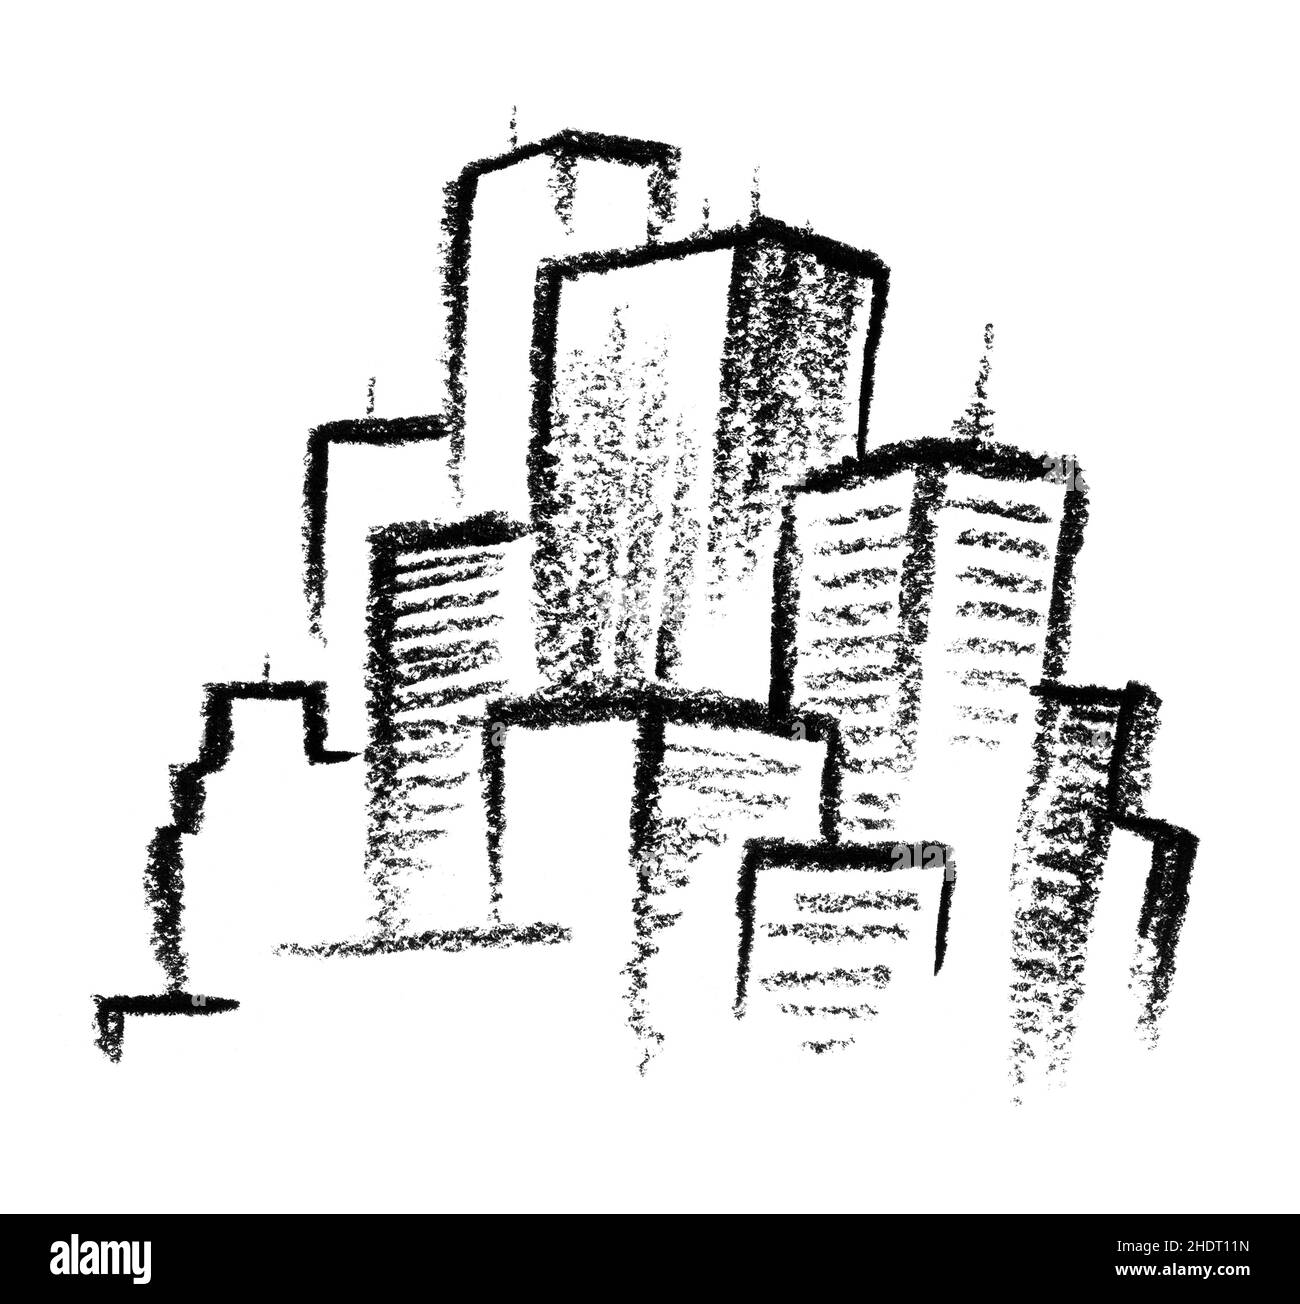 Dibujo de la ciudad Imágenes de stock en blanco y negro - Alamy